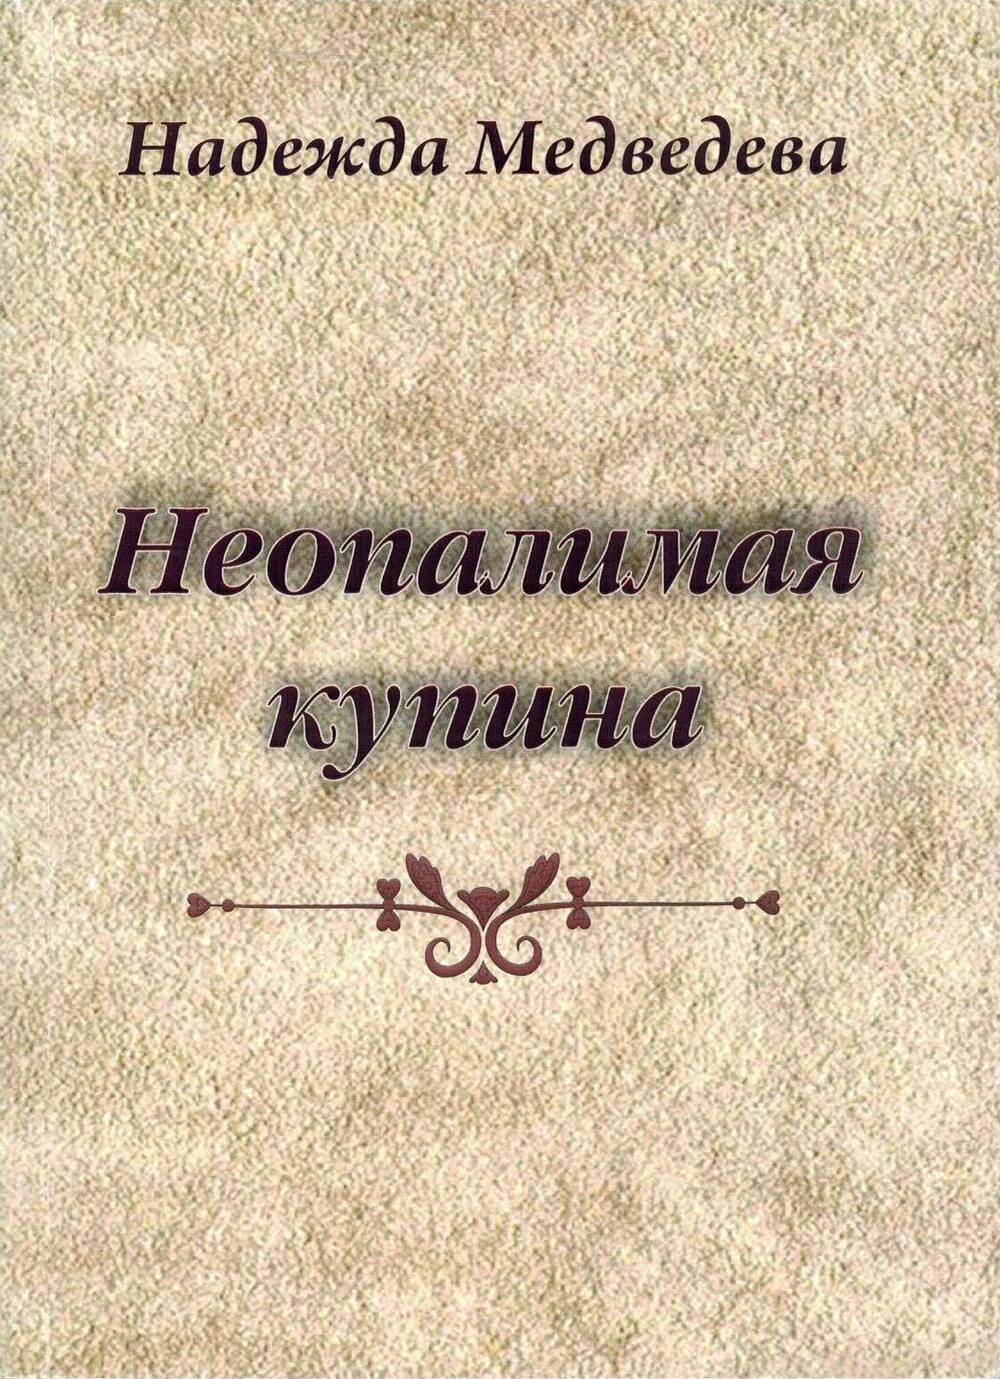 Книга Надежда Медведева Неопалимая купина стихи